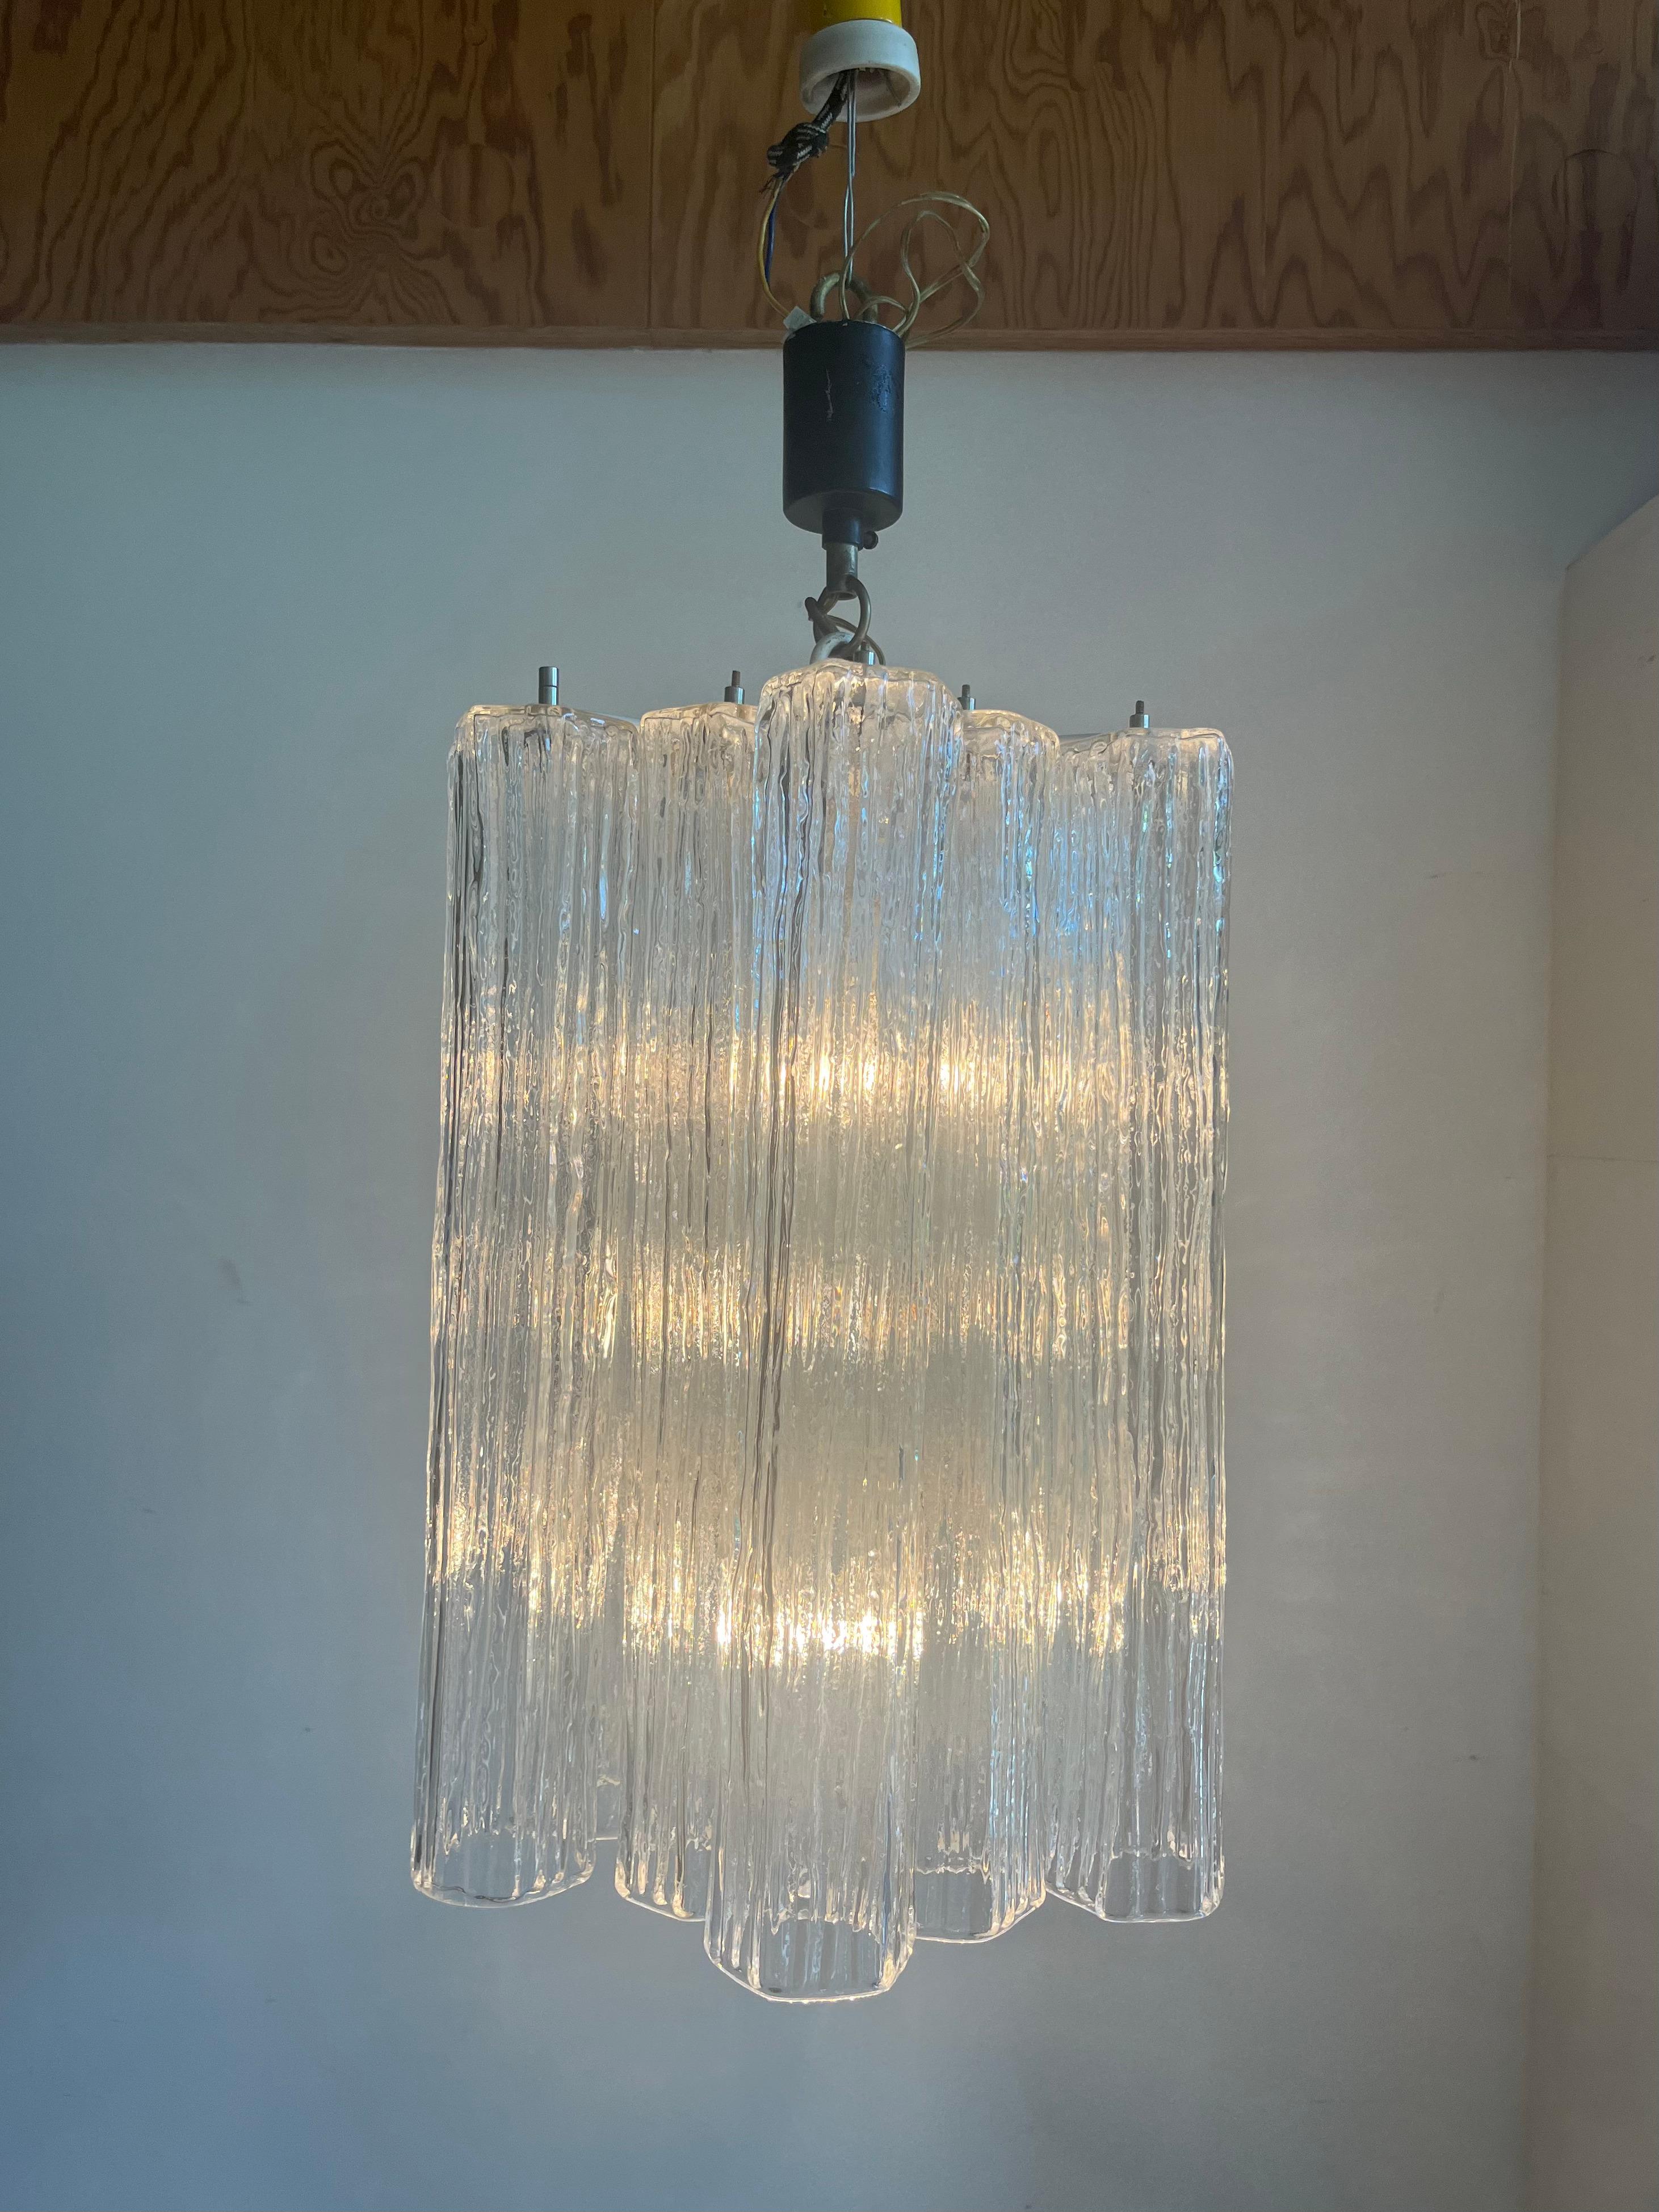 Mid-Century Modern chandelier attributed by Toni Zuccheri for Venini in Murano glass, circa 1950-1960.

Dimensioni:
altezza canne: 40 cm (~)
diam. canne: 6-6,5 cm (~)
num.canne:  12
tre lampade attacco E14 (piccolo)
Tutte le canne presentano